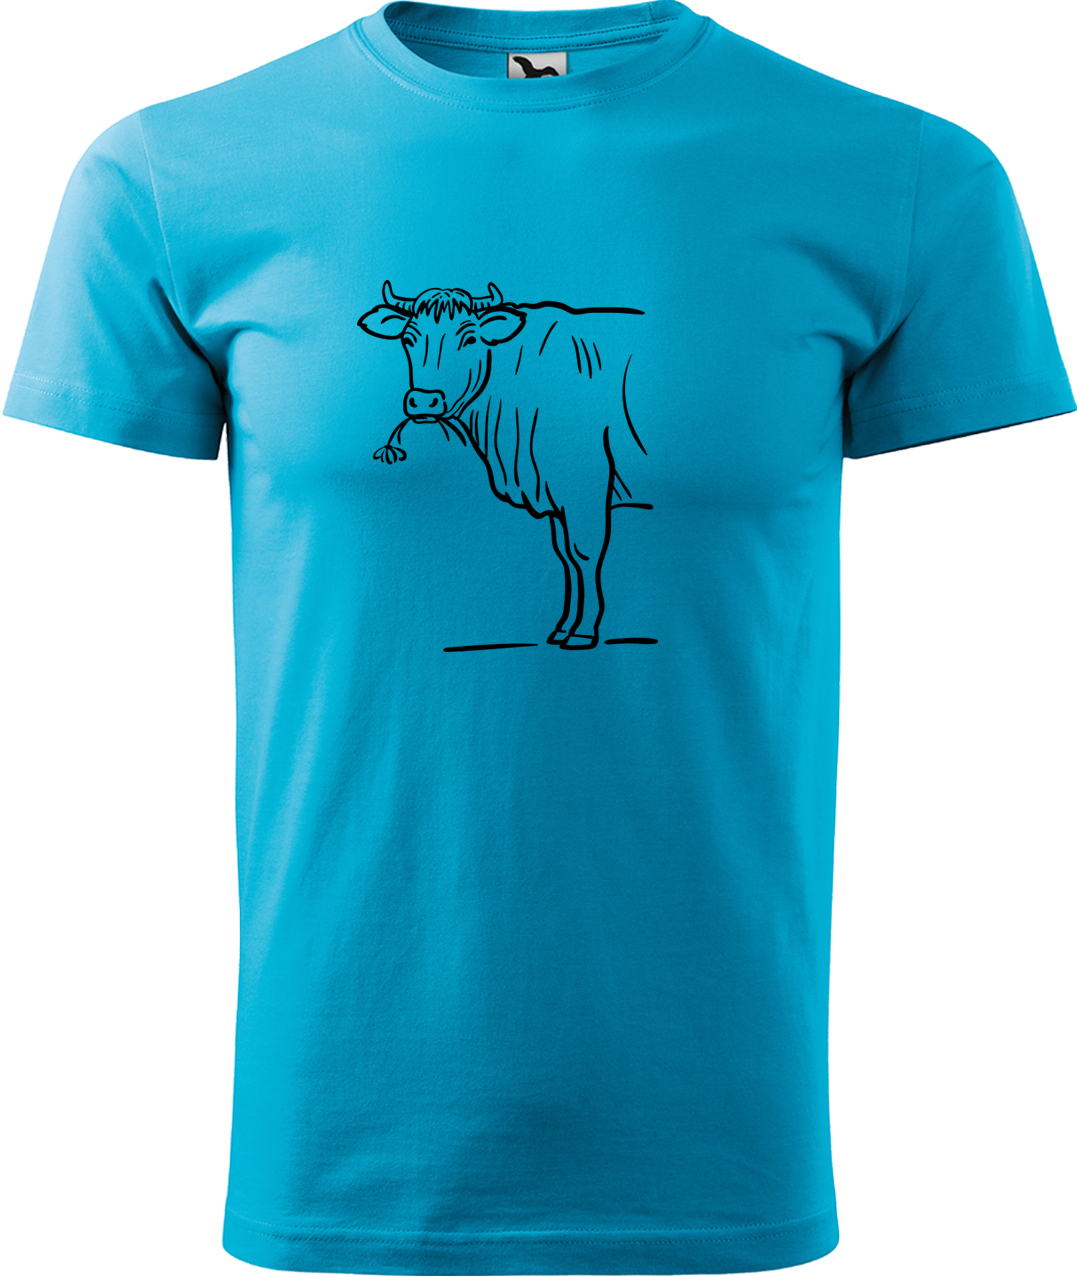 Pánské tričko s krávou - Býk Velikost: M, Barva: Tyrkysová (44), Střih: pánský